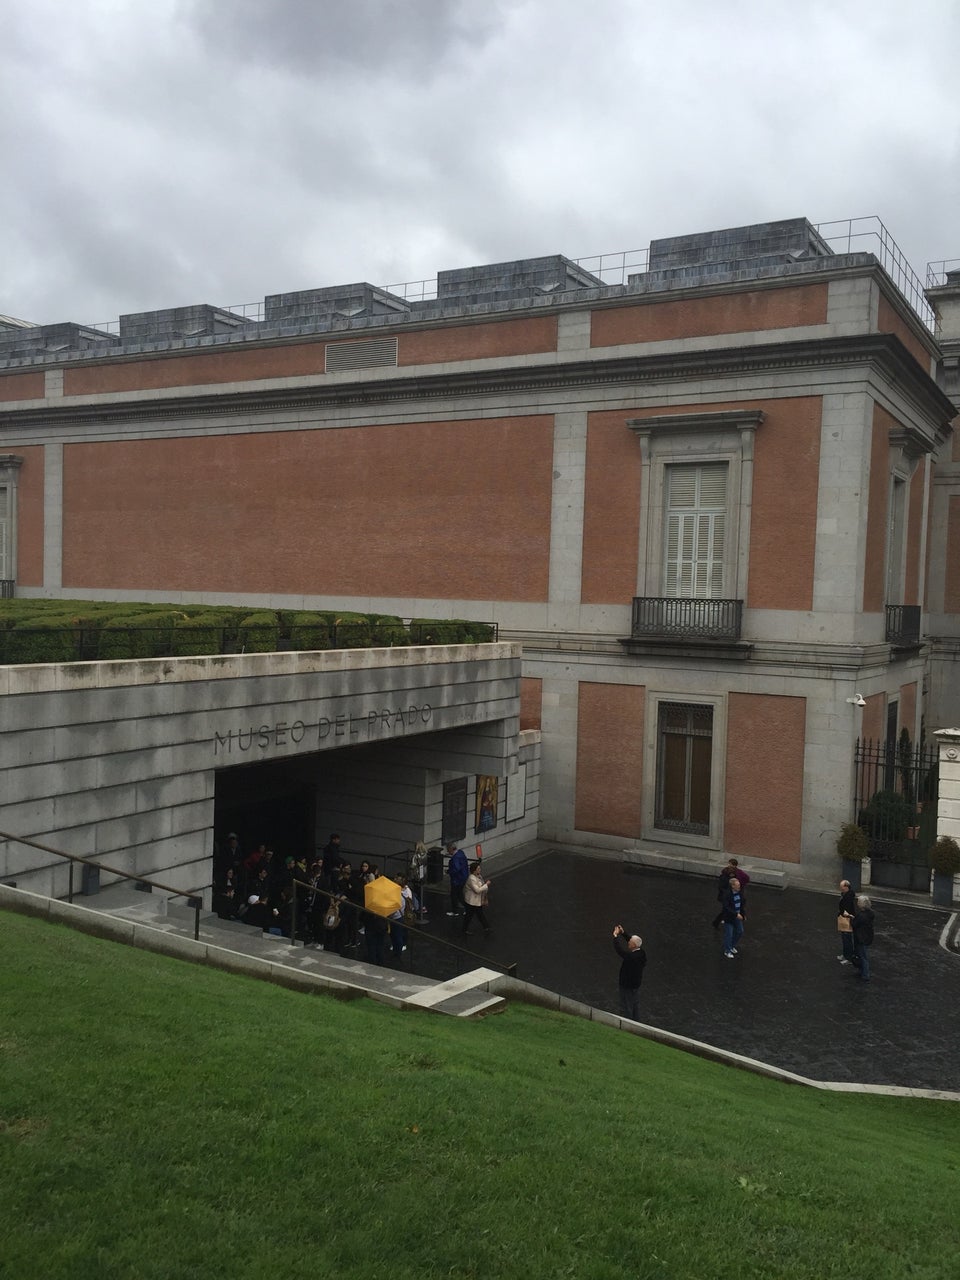 Photo of El Museo del Prado